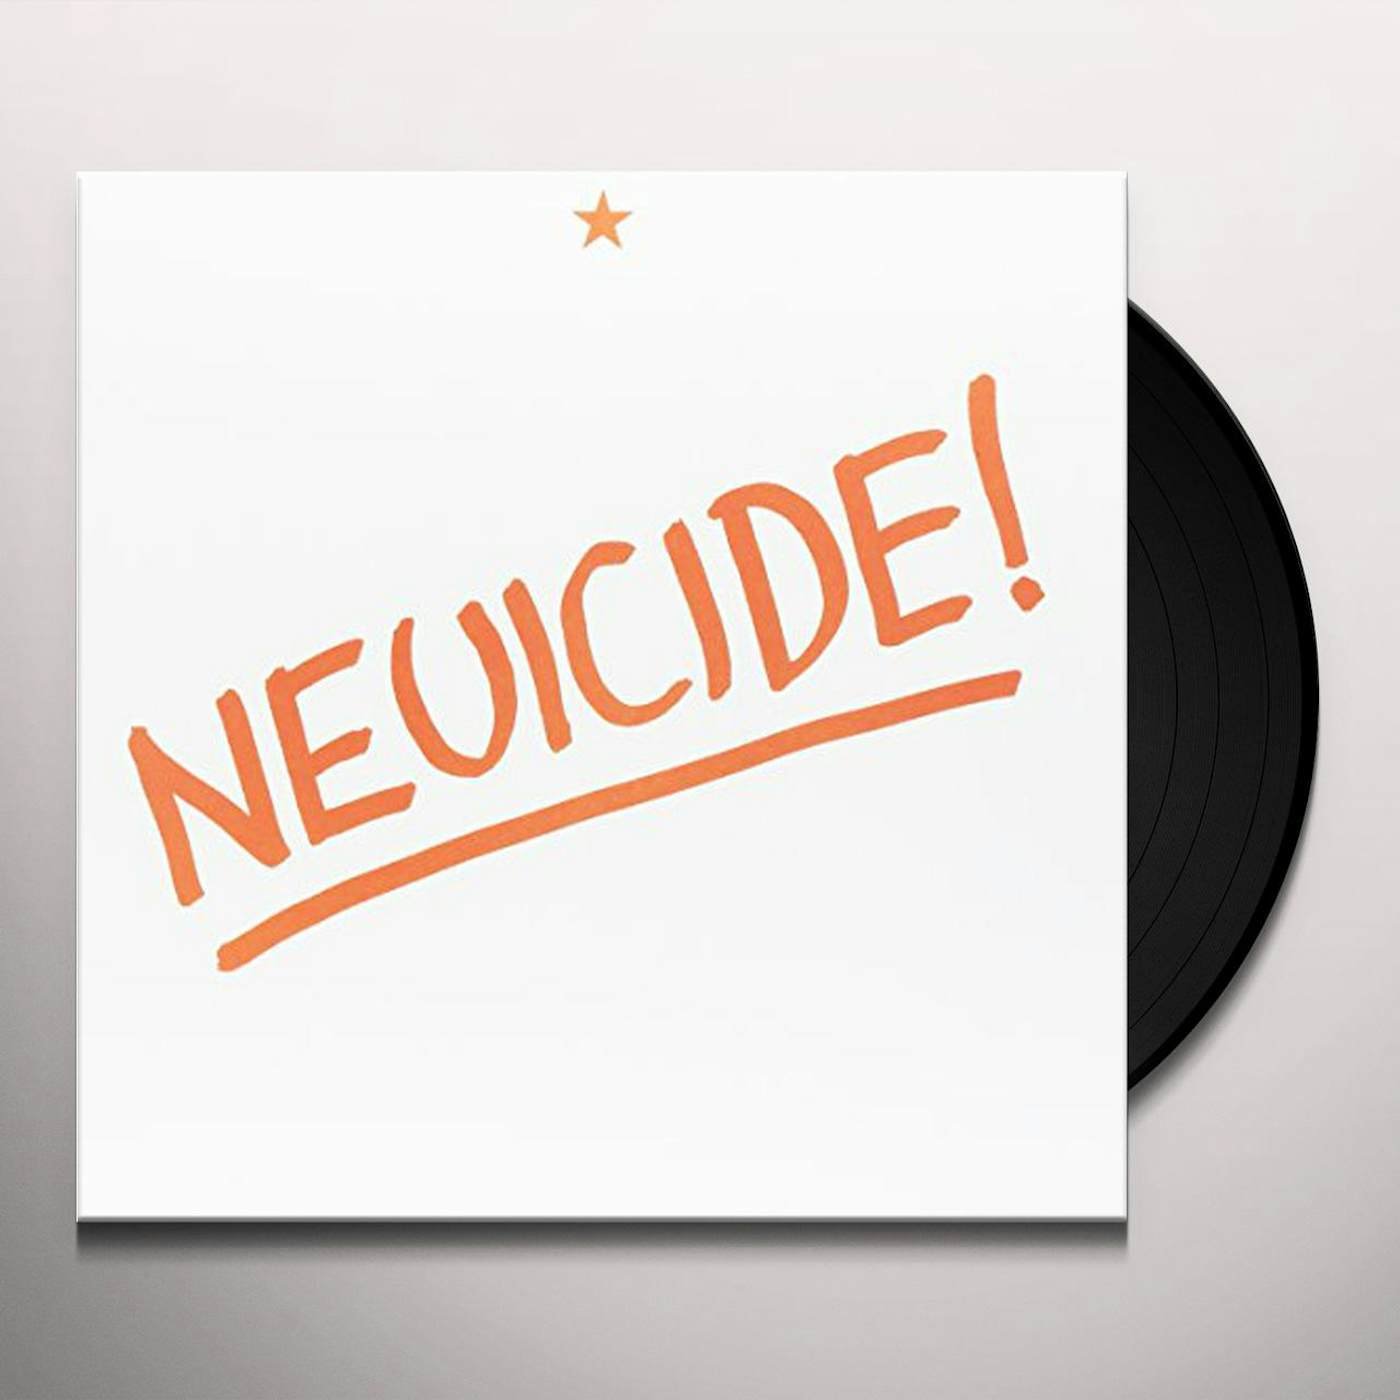 Al Lover Neuicide! Vinyl Record